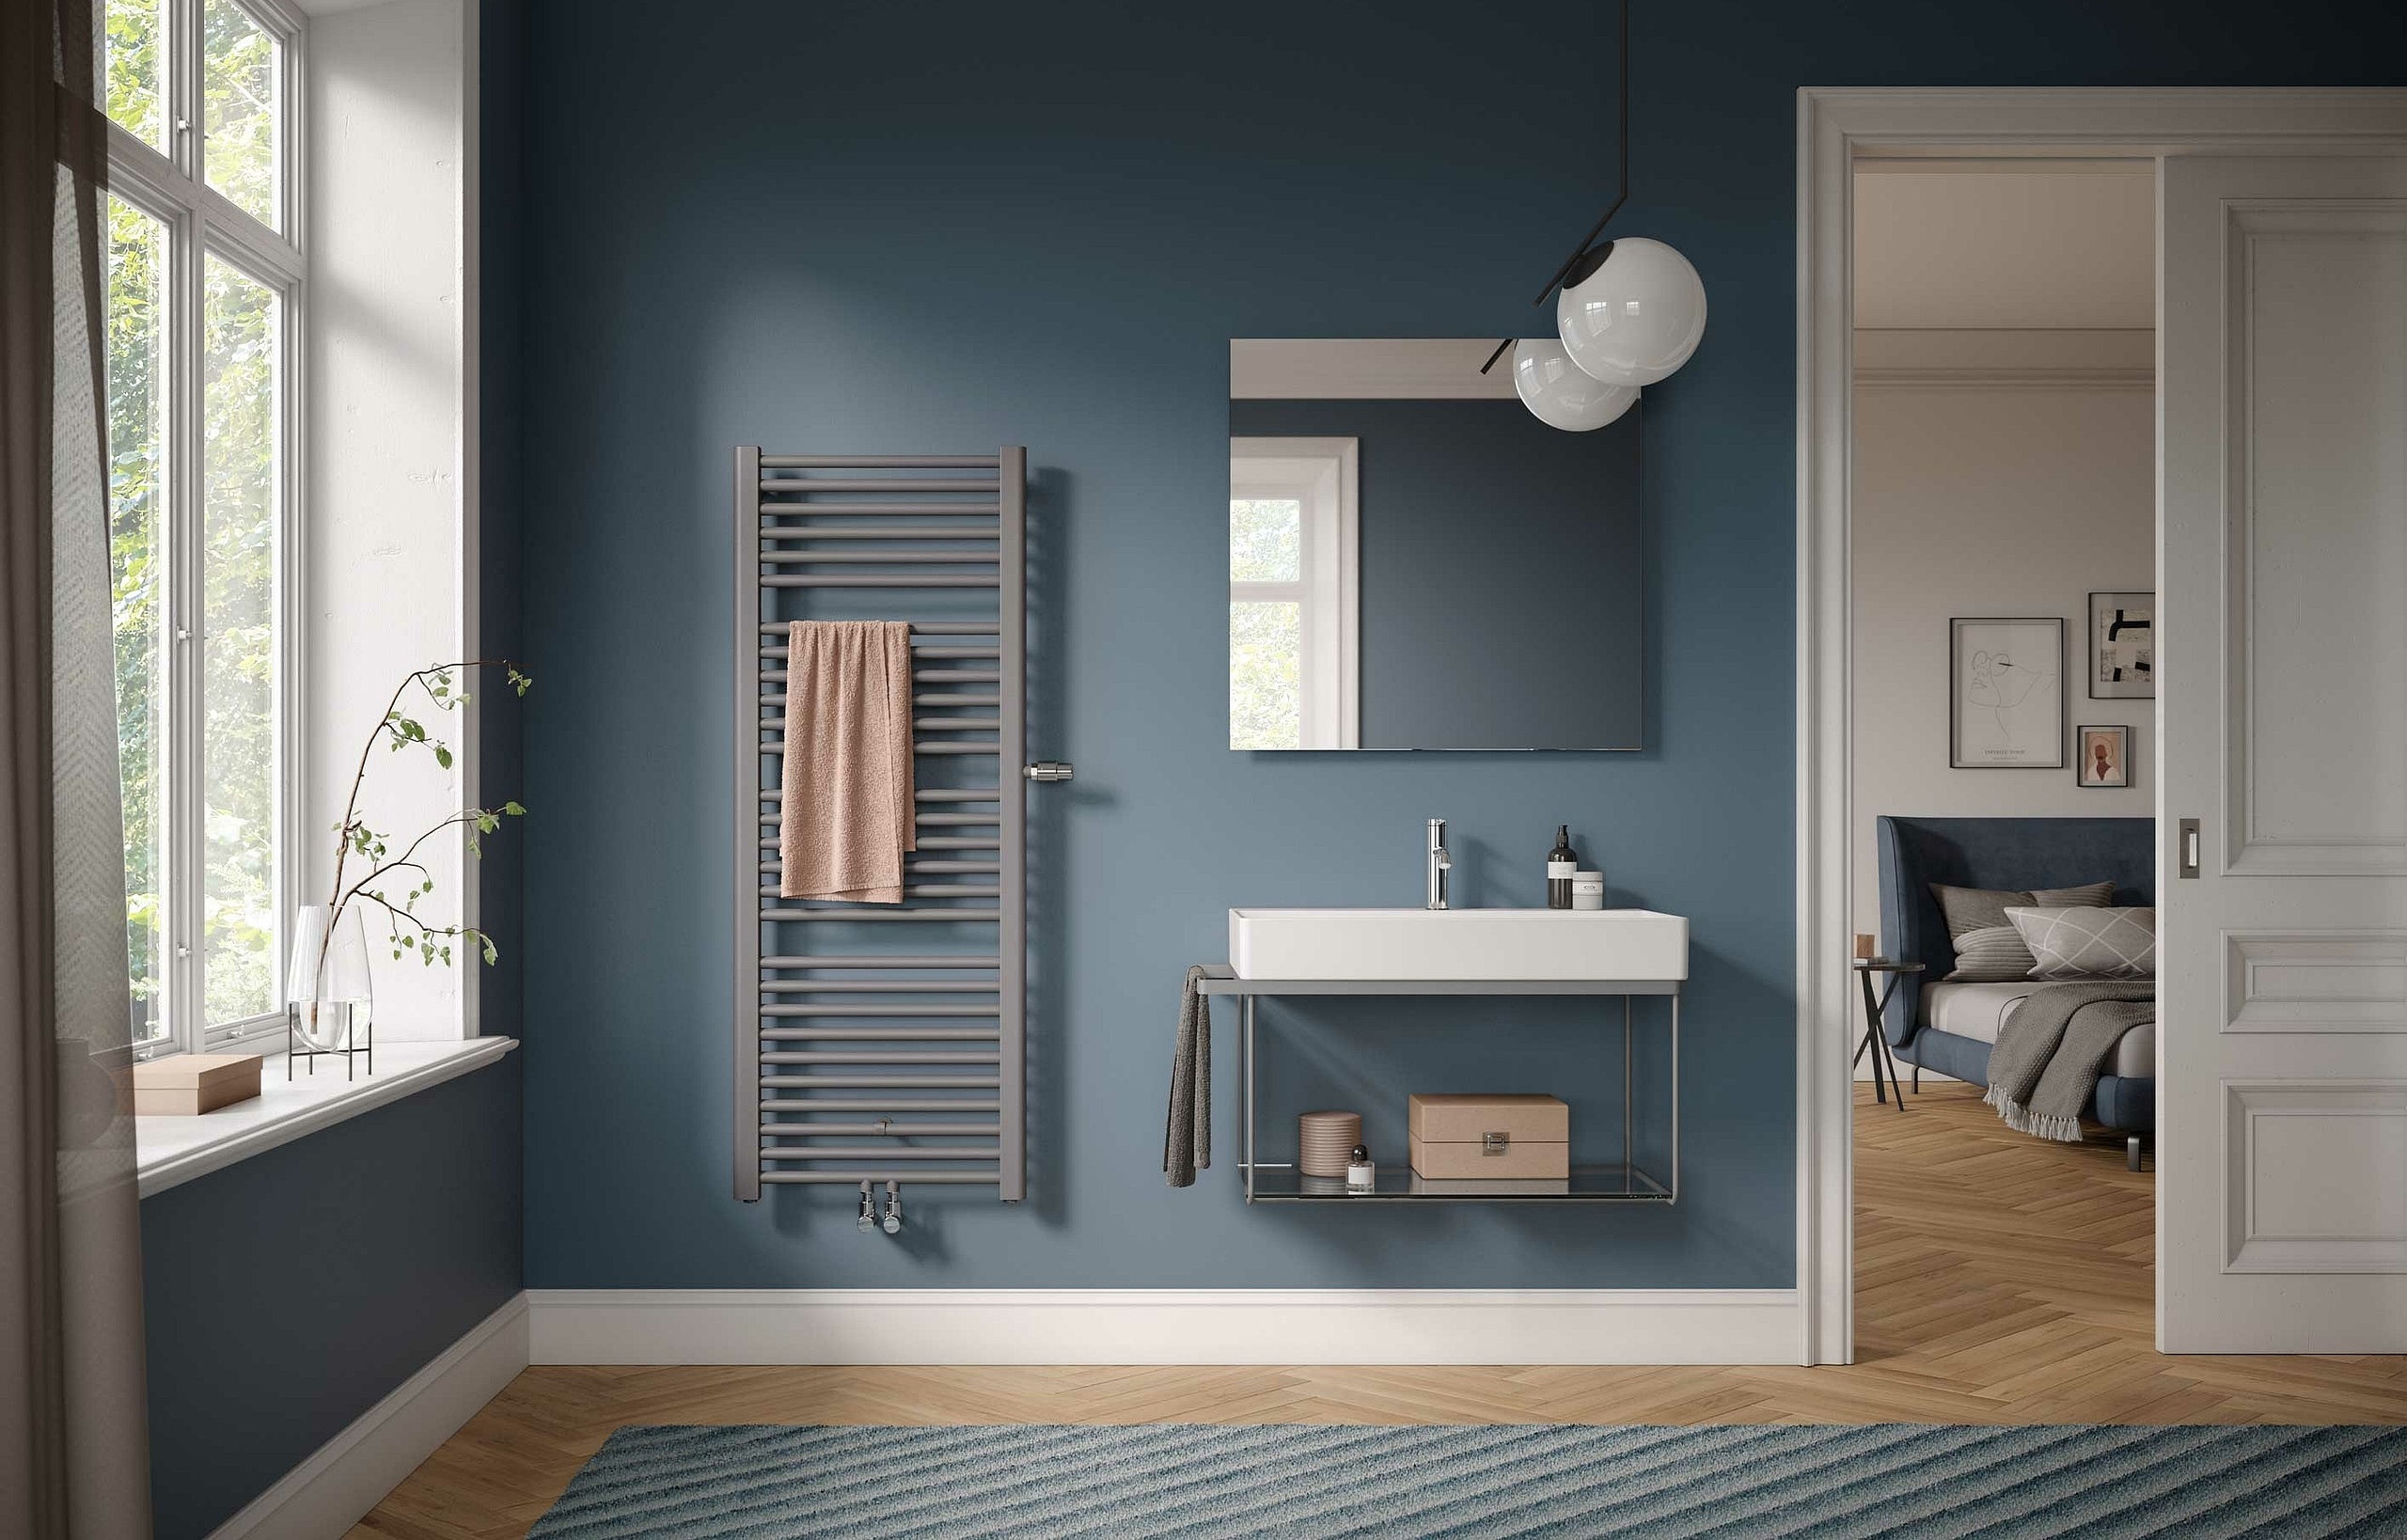 Kermi Basic plus designer and bathroom radiators – classic design. Easy to operate.